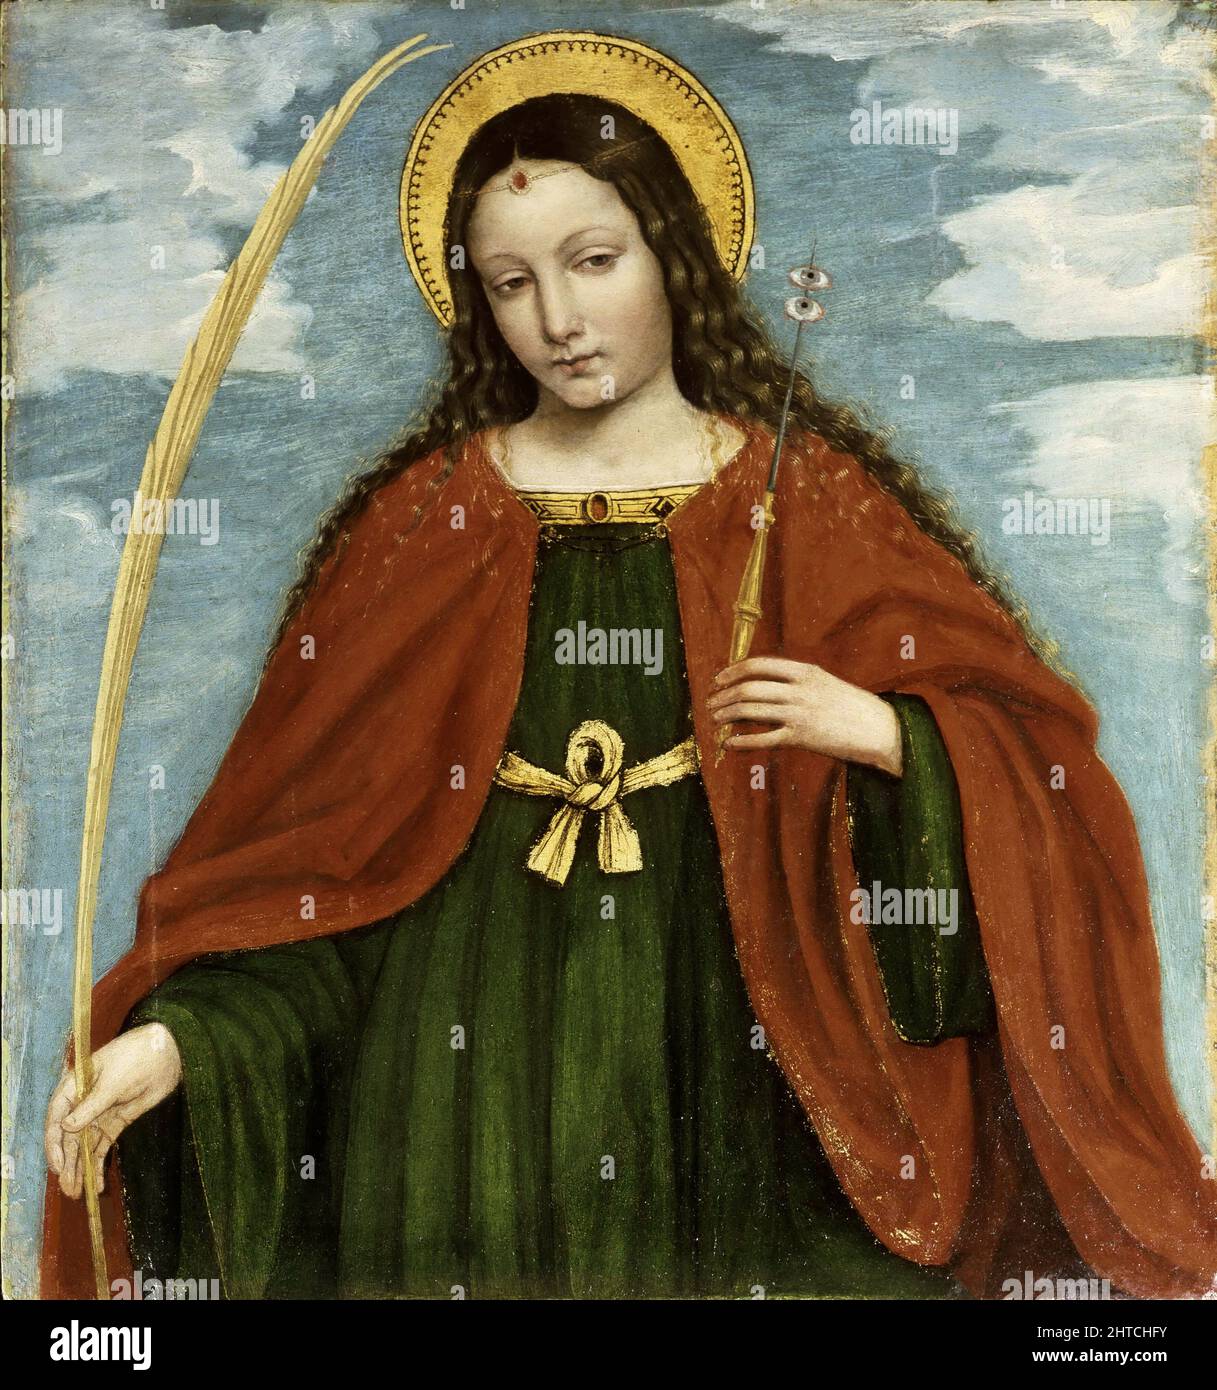 St. Lucia (vom Polyptychon San Bartolomeo), 1515-1520. Gefunden in der Sammlung der Accademia Carrara, Bergamo. Stockfoto